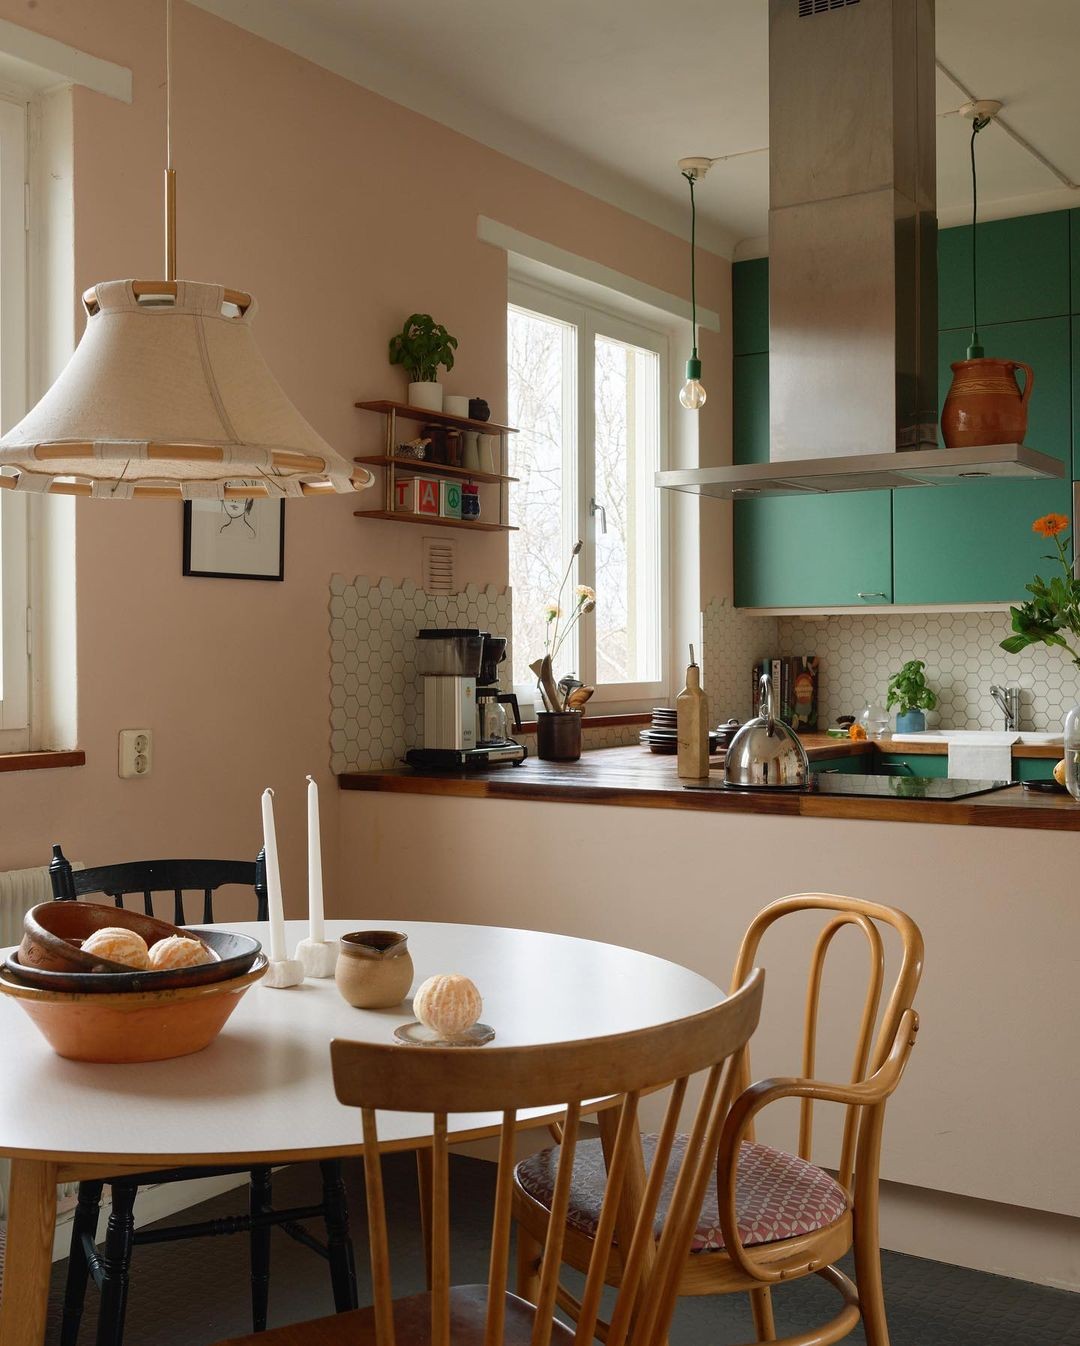 Décor do dia: sala de jantar pequena e integrada à cozinha (Foto: Divulgação)